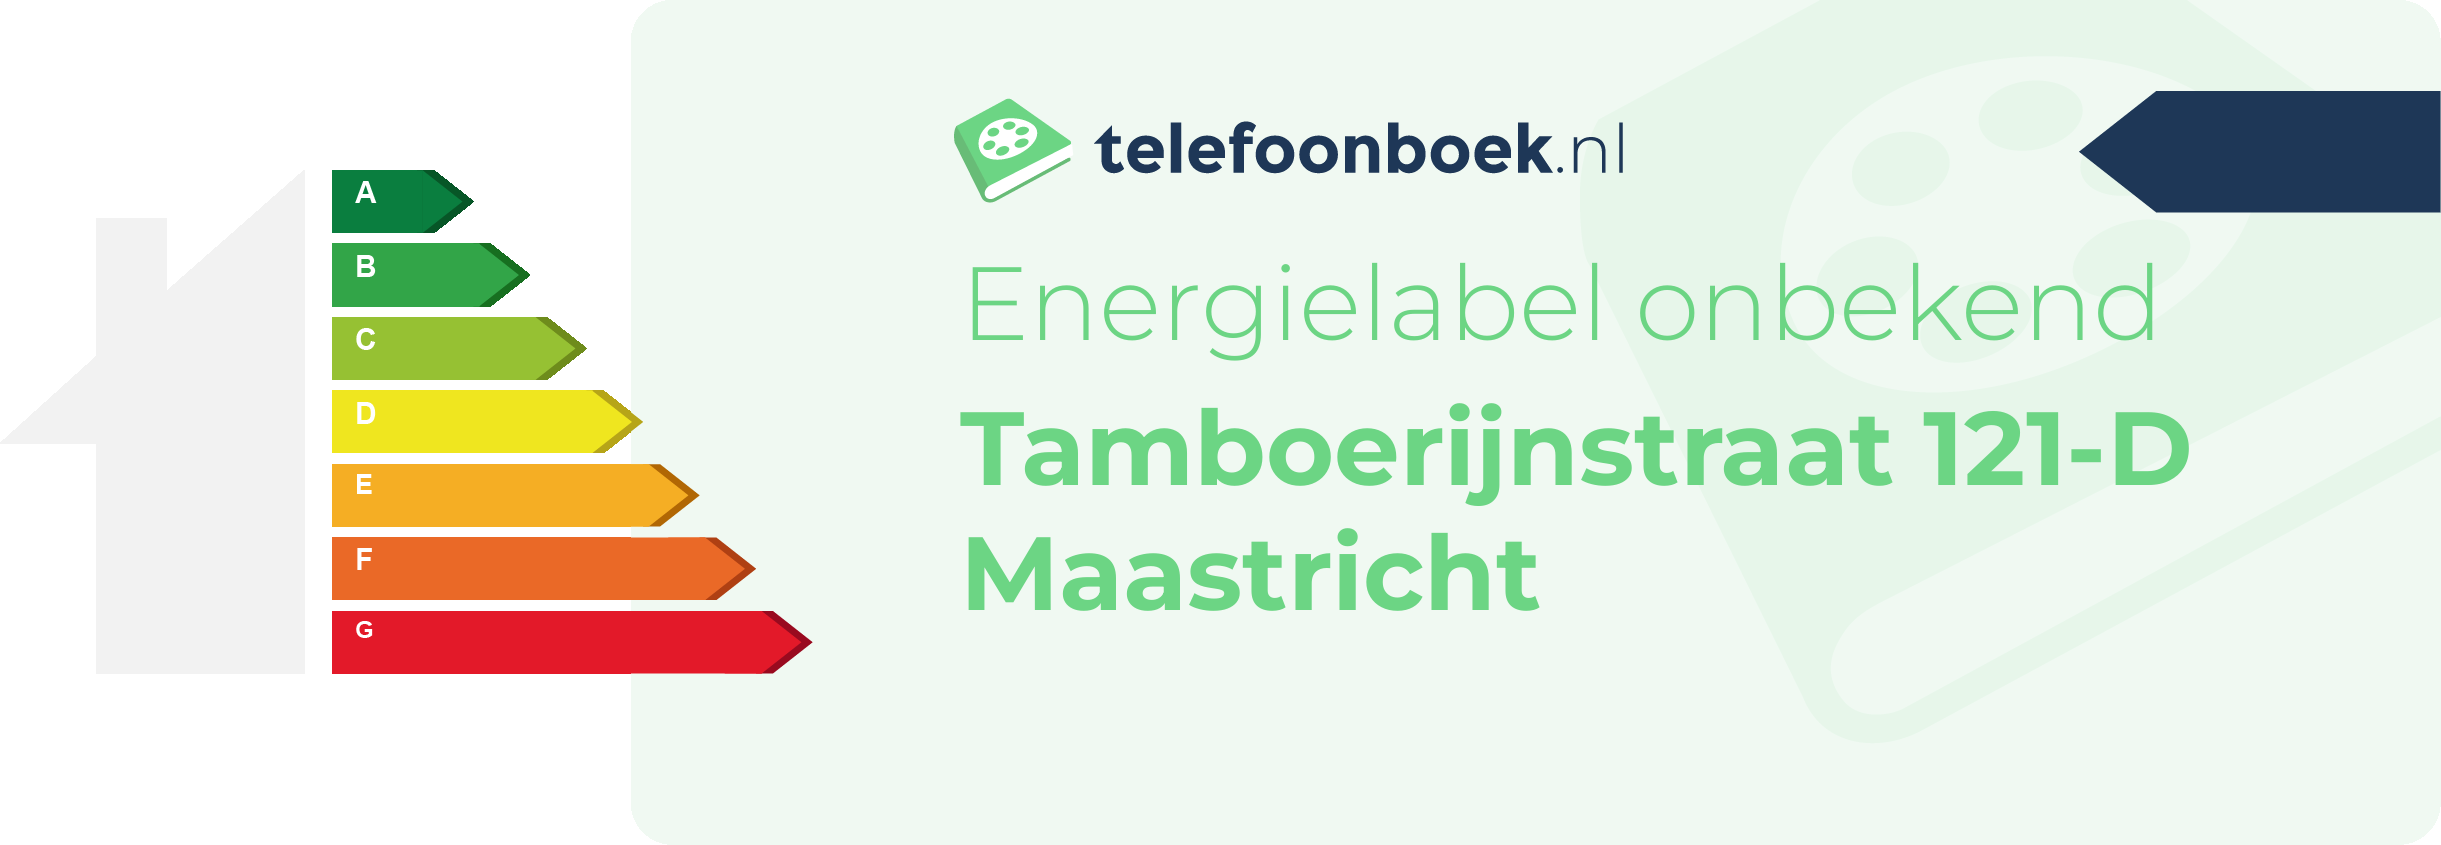 Energielabel Tamboerijnstraat 121-D Maastricht